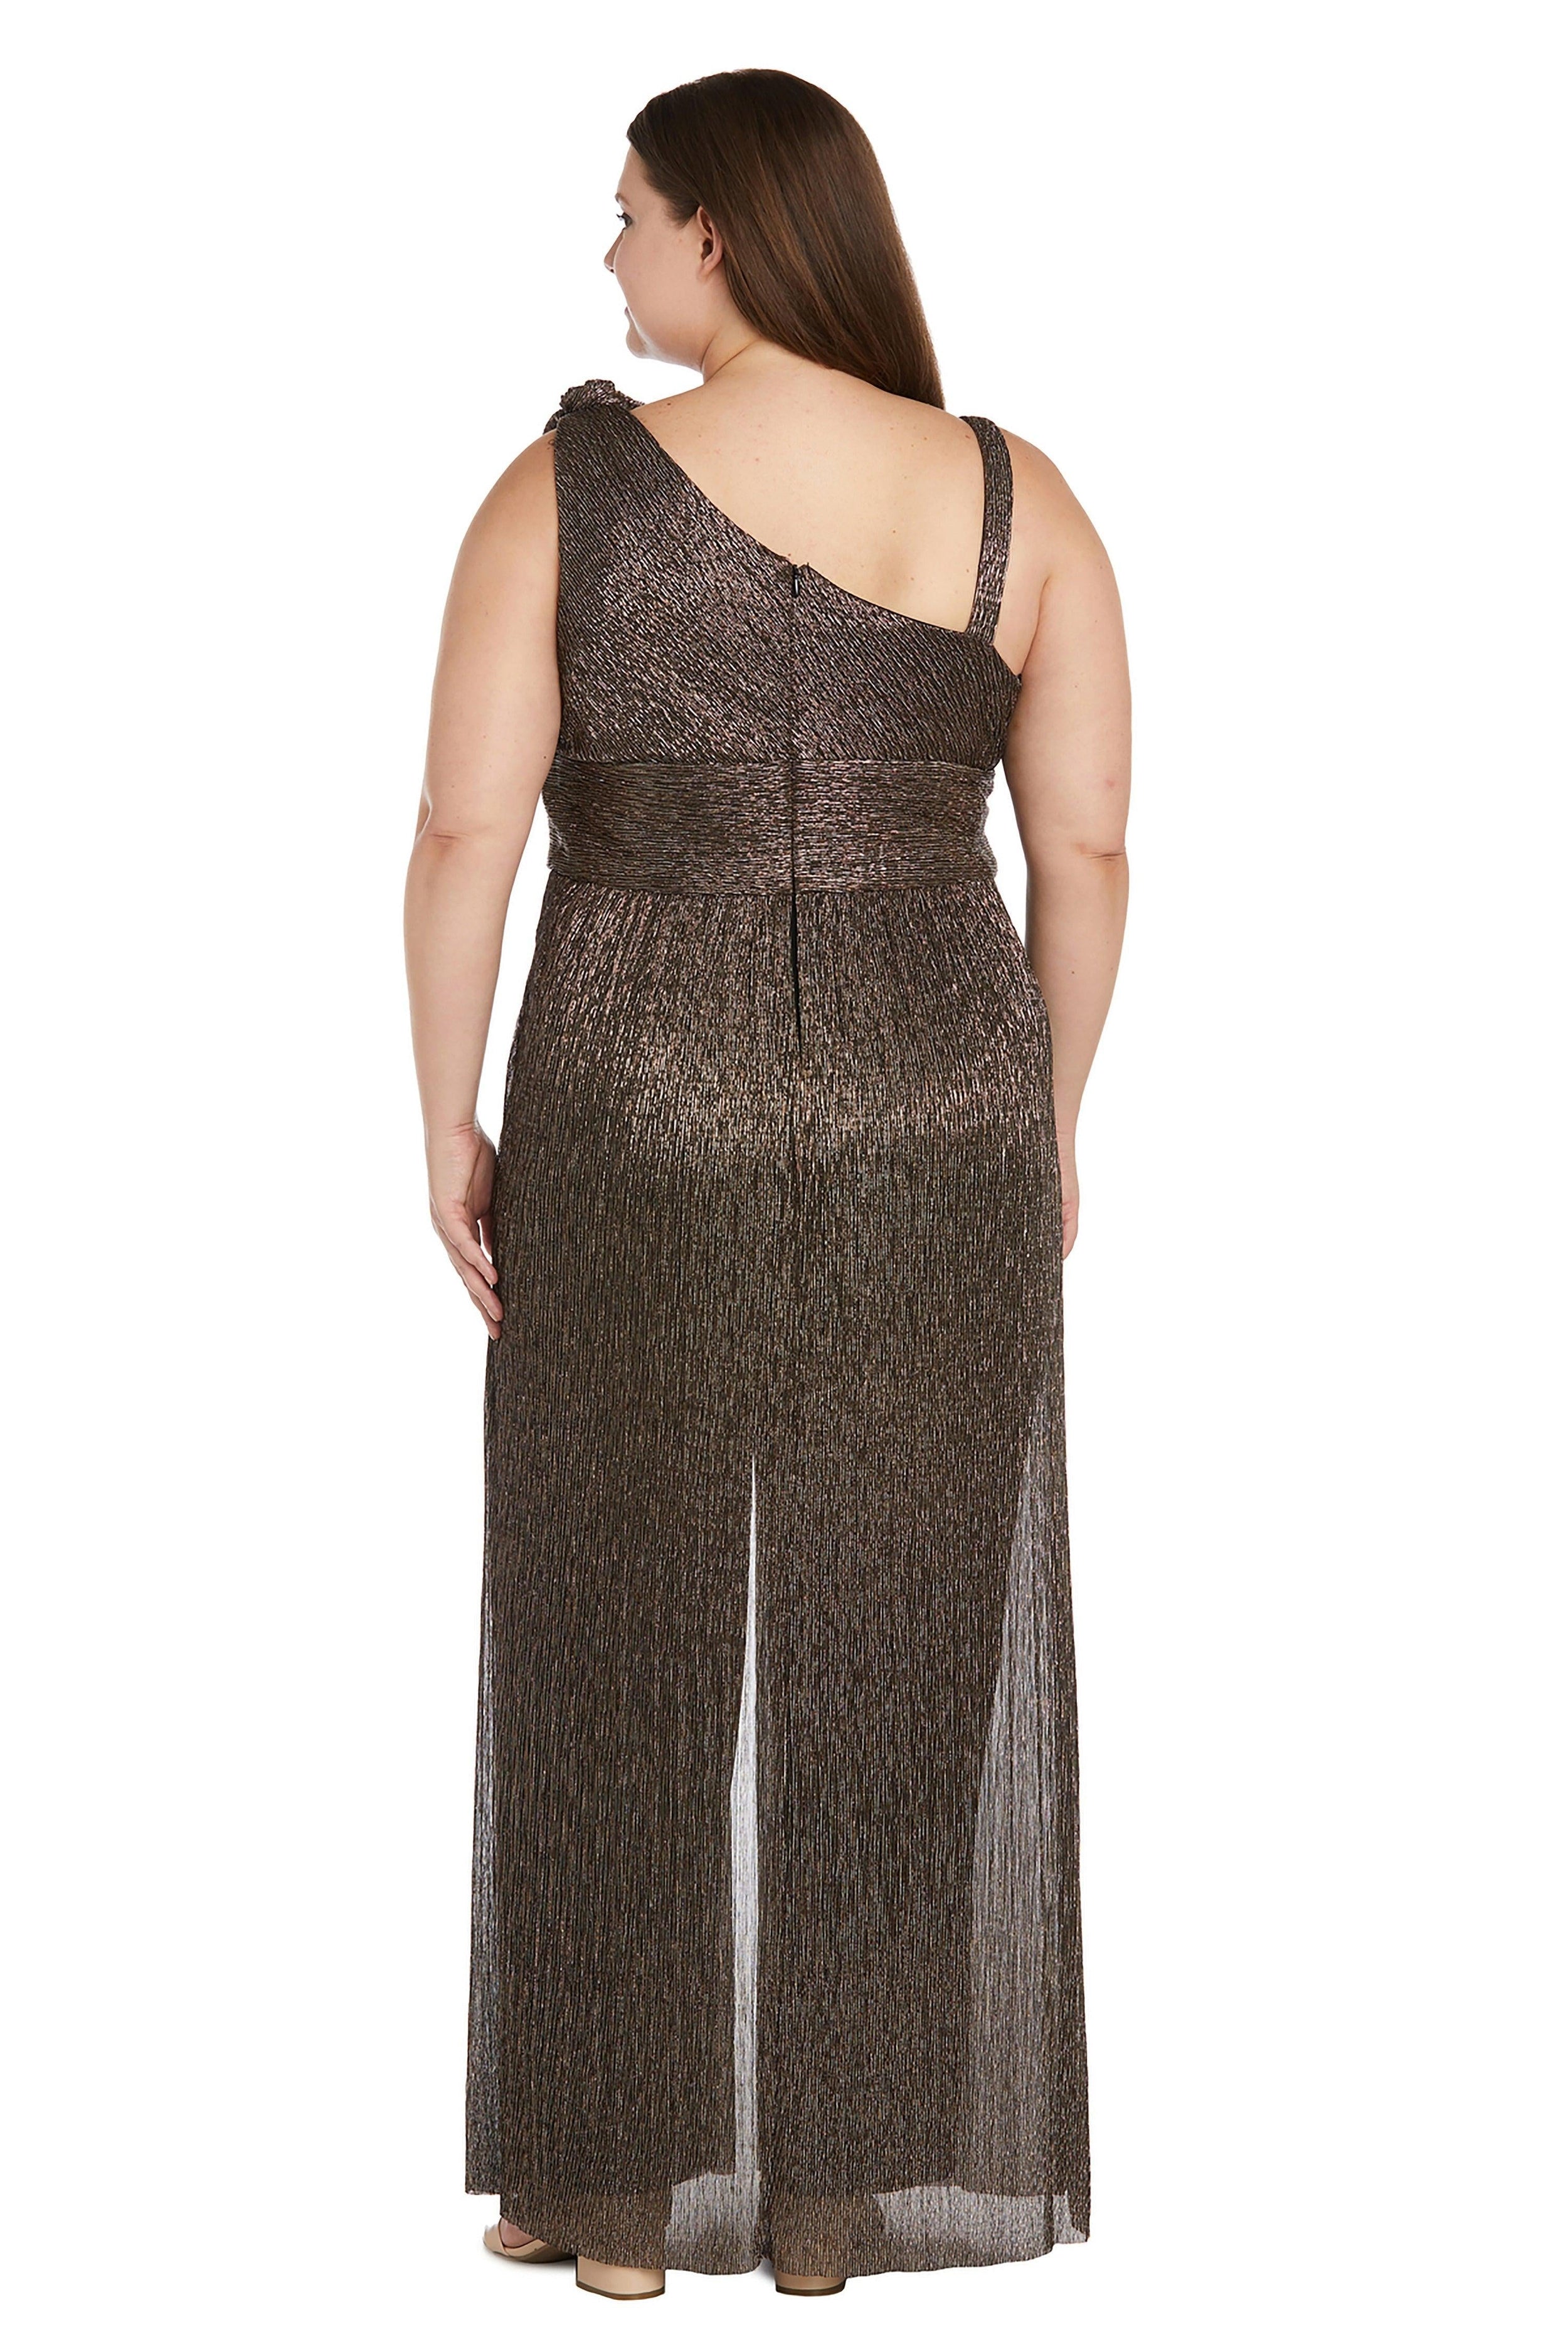 R&M Richards Formal Plus Size Jumpsuit 9628W - The Dress Outlet